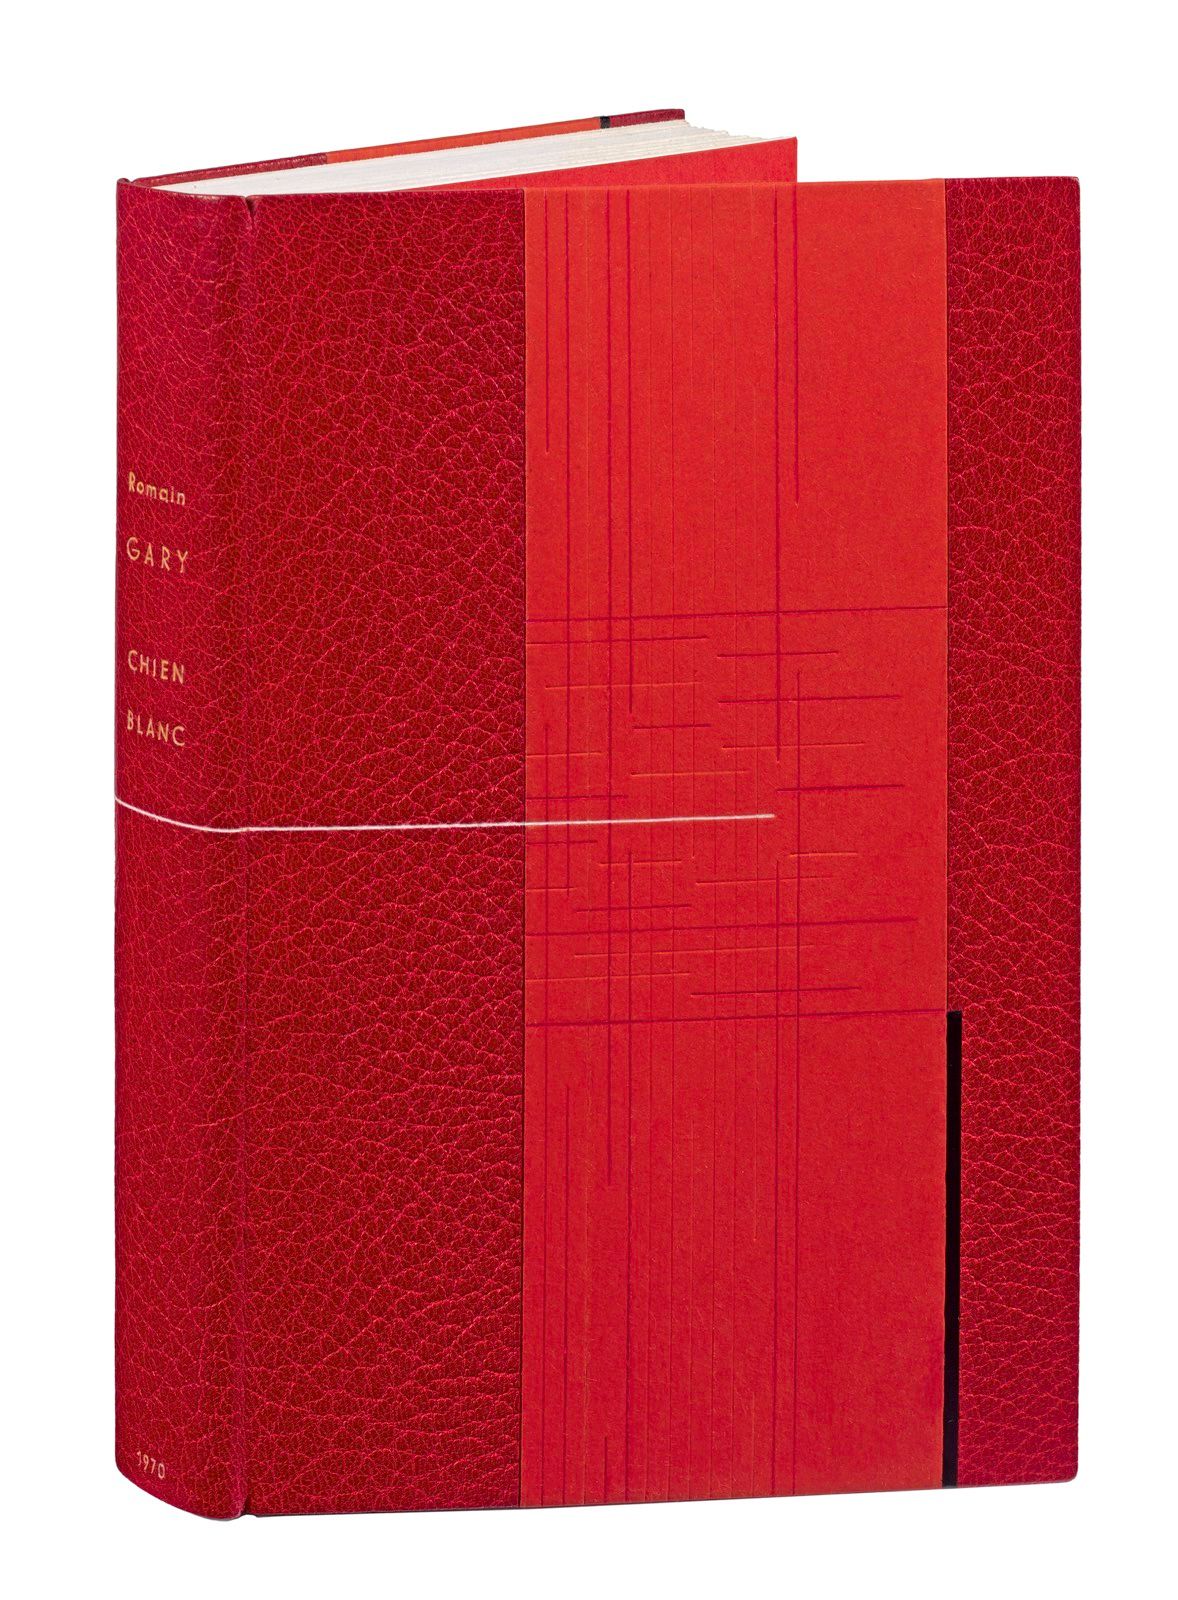 GARY (Romain). 白狗。巴黎，Gallimard出版社，1970年。8开本，带条纹的半红摩洛哥，橙色纸板，方形，有红色和无色的不连续圆角，外侧有短的&hellip;